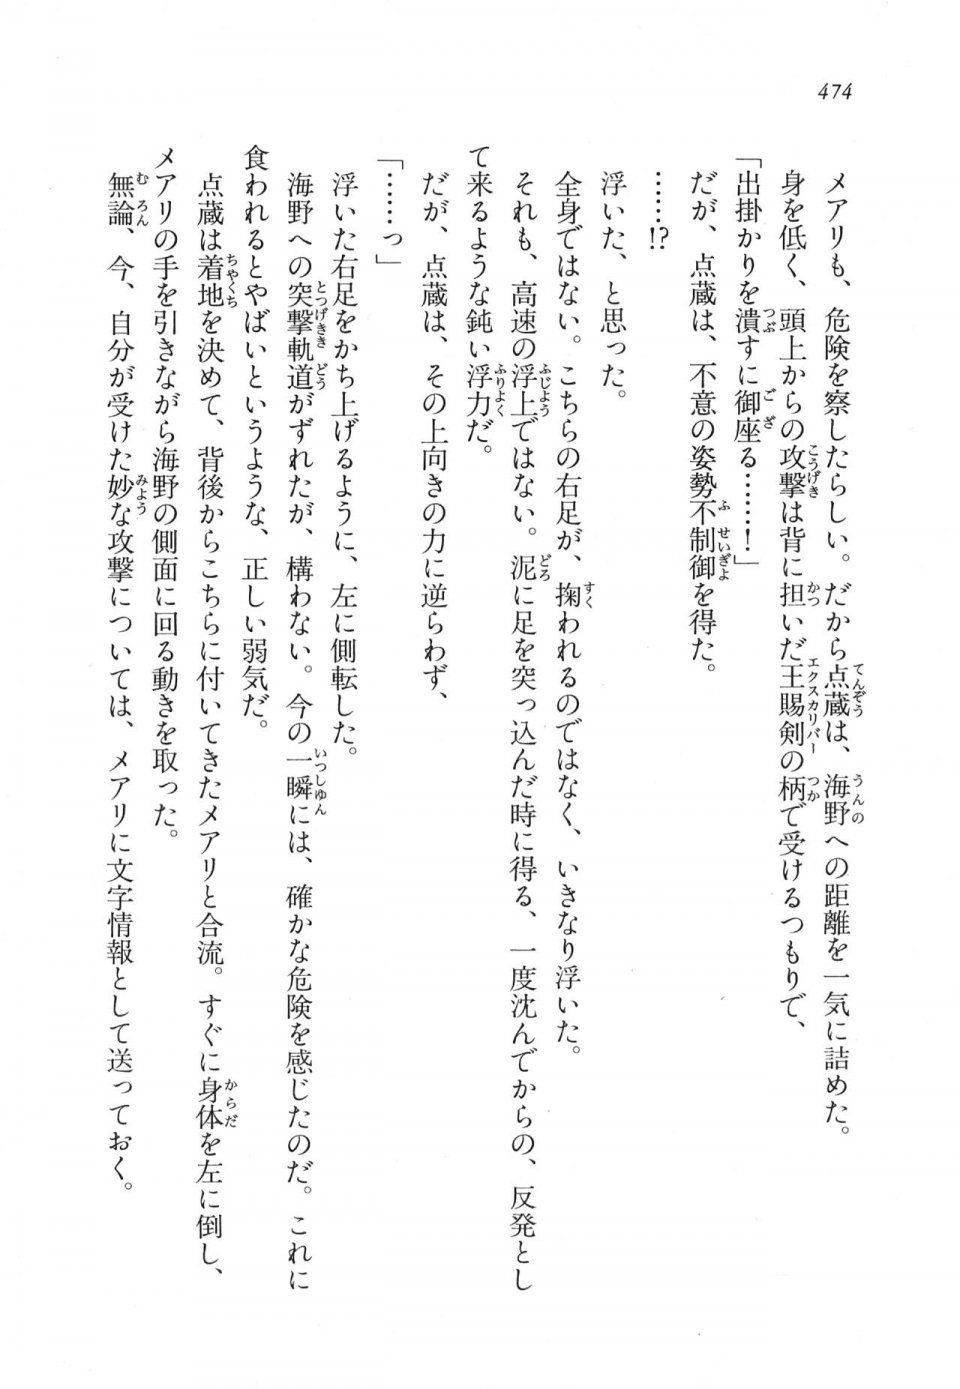 Kyoukai Senjou no Horizon LN Vol 11(5A) - Photo #474